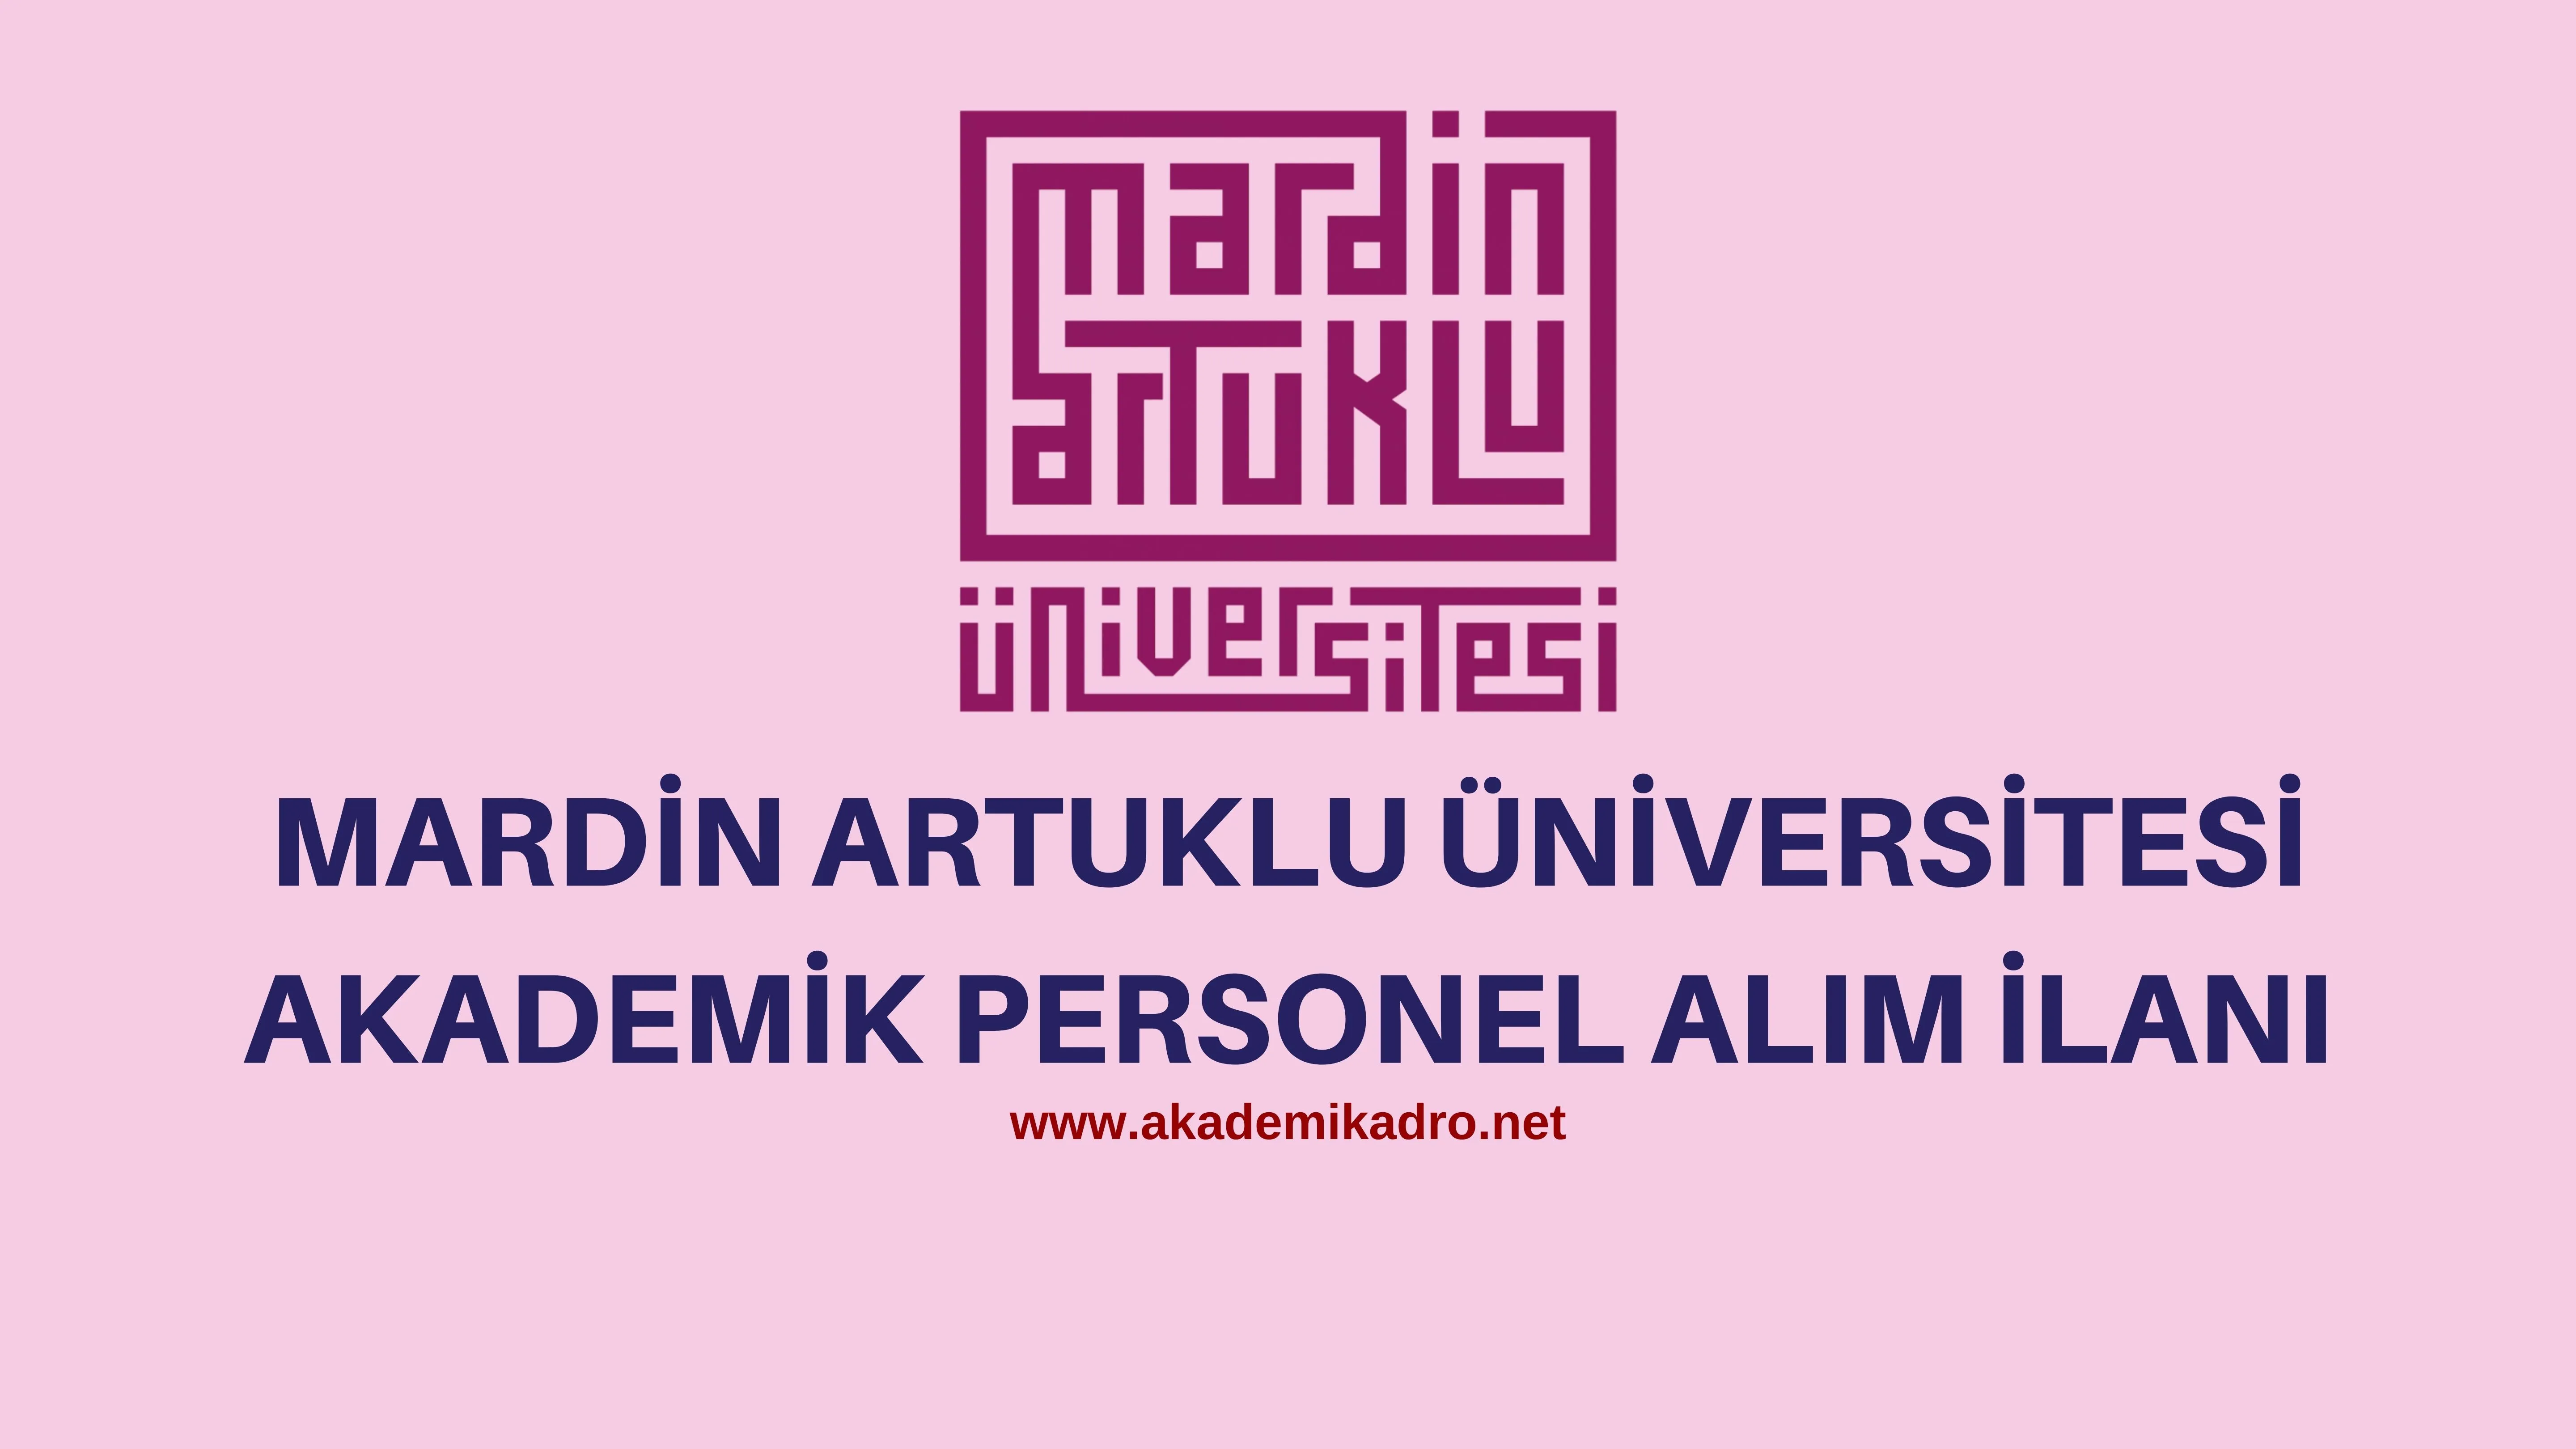 Mardin Artuklu Üniversitesi birçok alandan 30 Akademik personel alacak. 